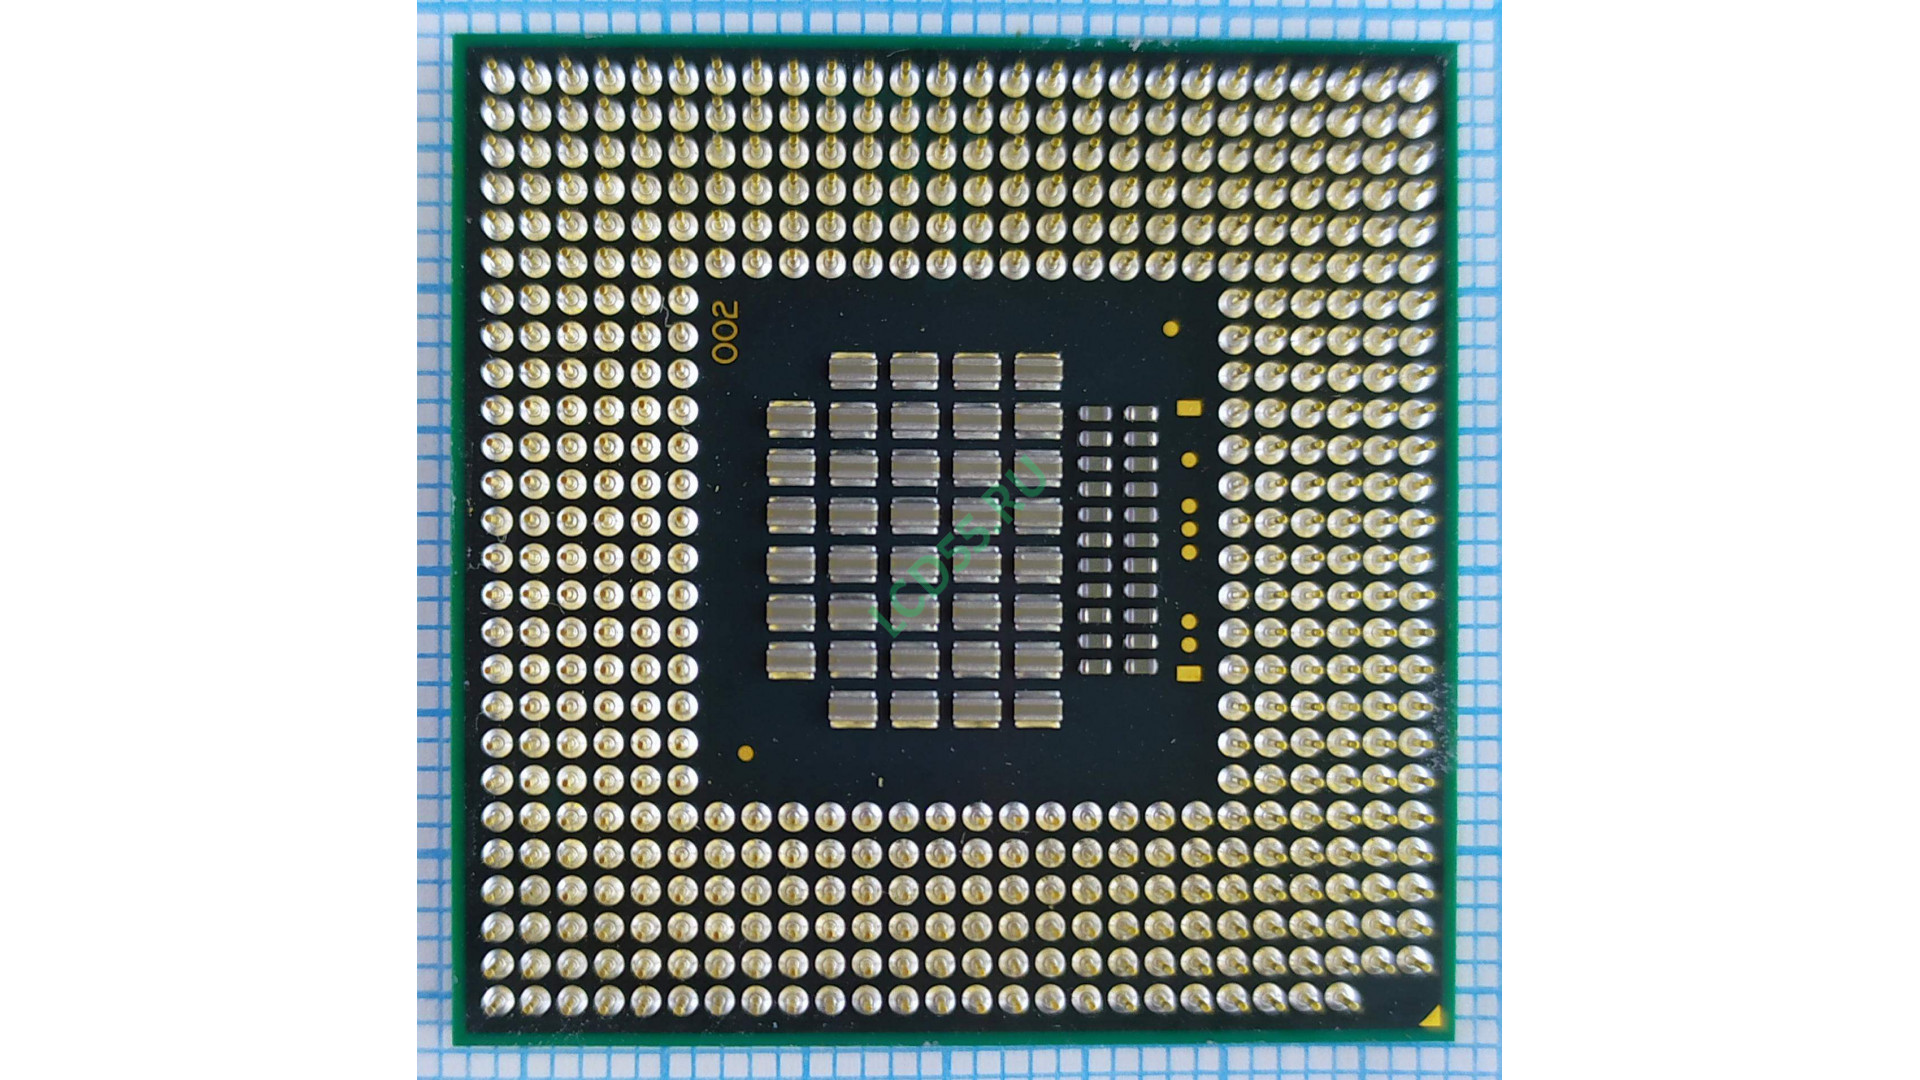 Intel Core 2 Duo T7300 (4M Cache, 2.0 GHz, 800 MHz FSB) SLA45